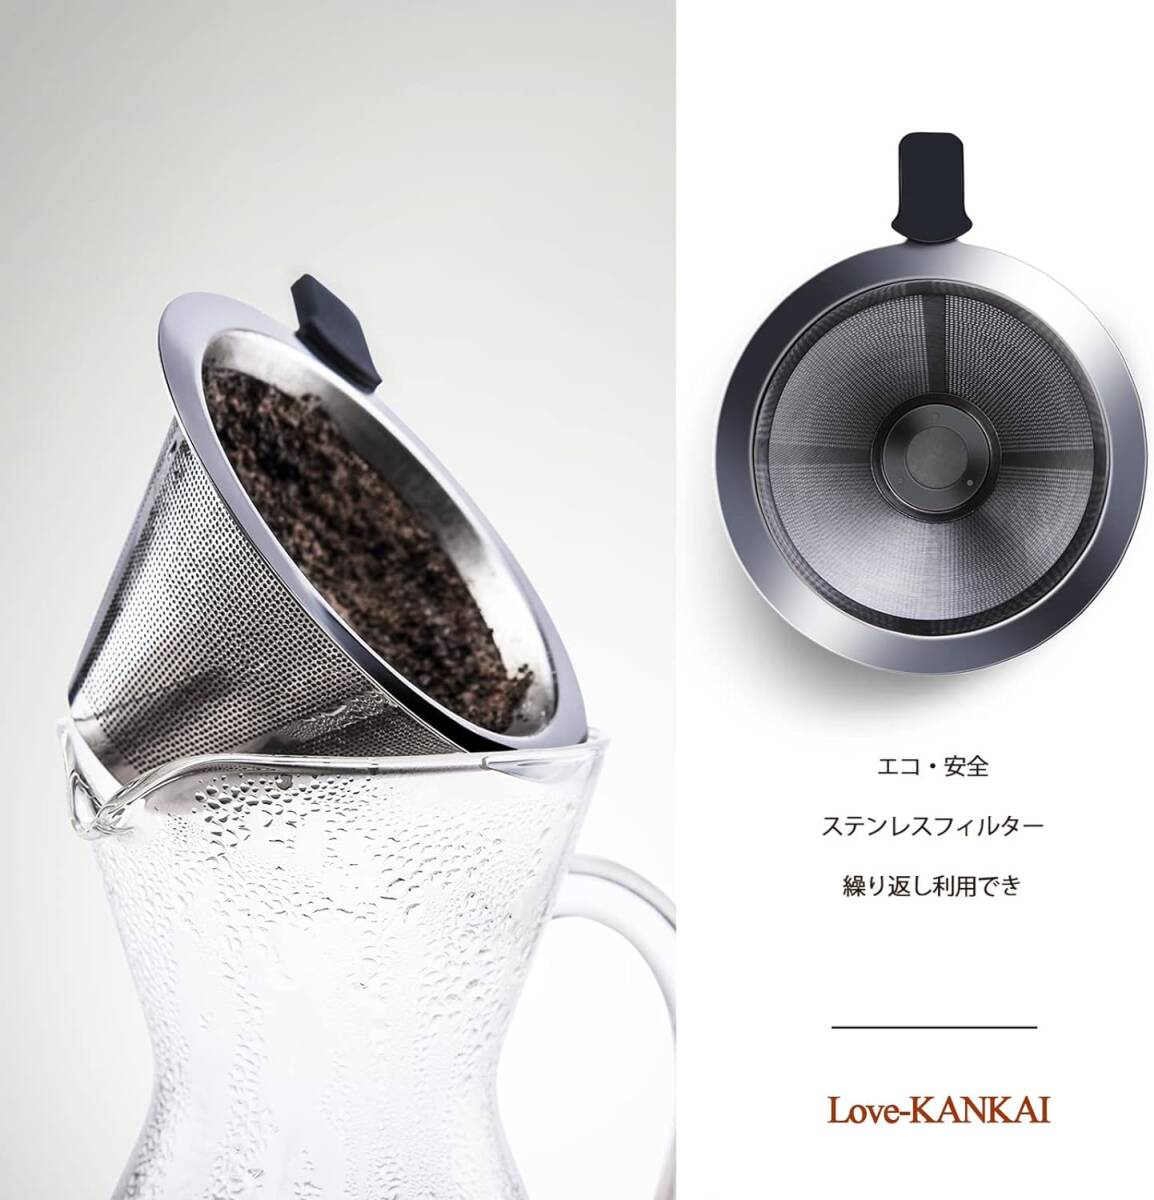 Love-KANKEI コーヒーサーバー コーヒードリッパー コーヒーカラフェセット プレゼント スポンジブラシ付属 耐熱ガラス_画像3